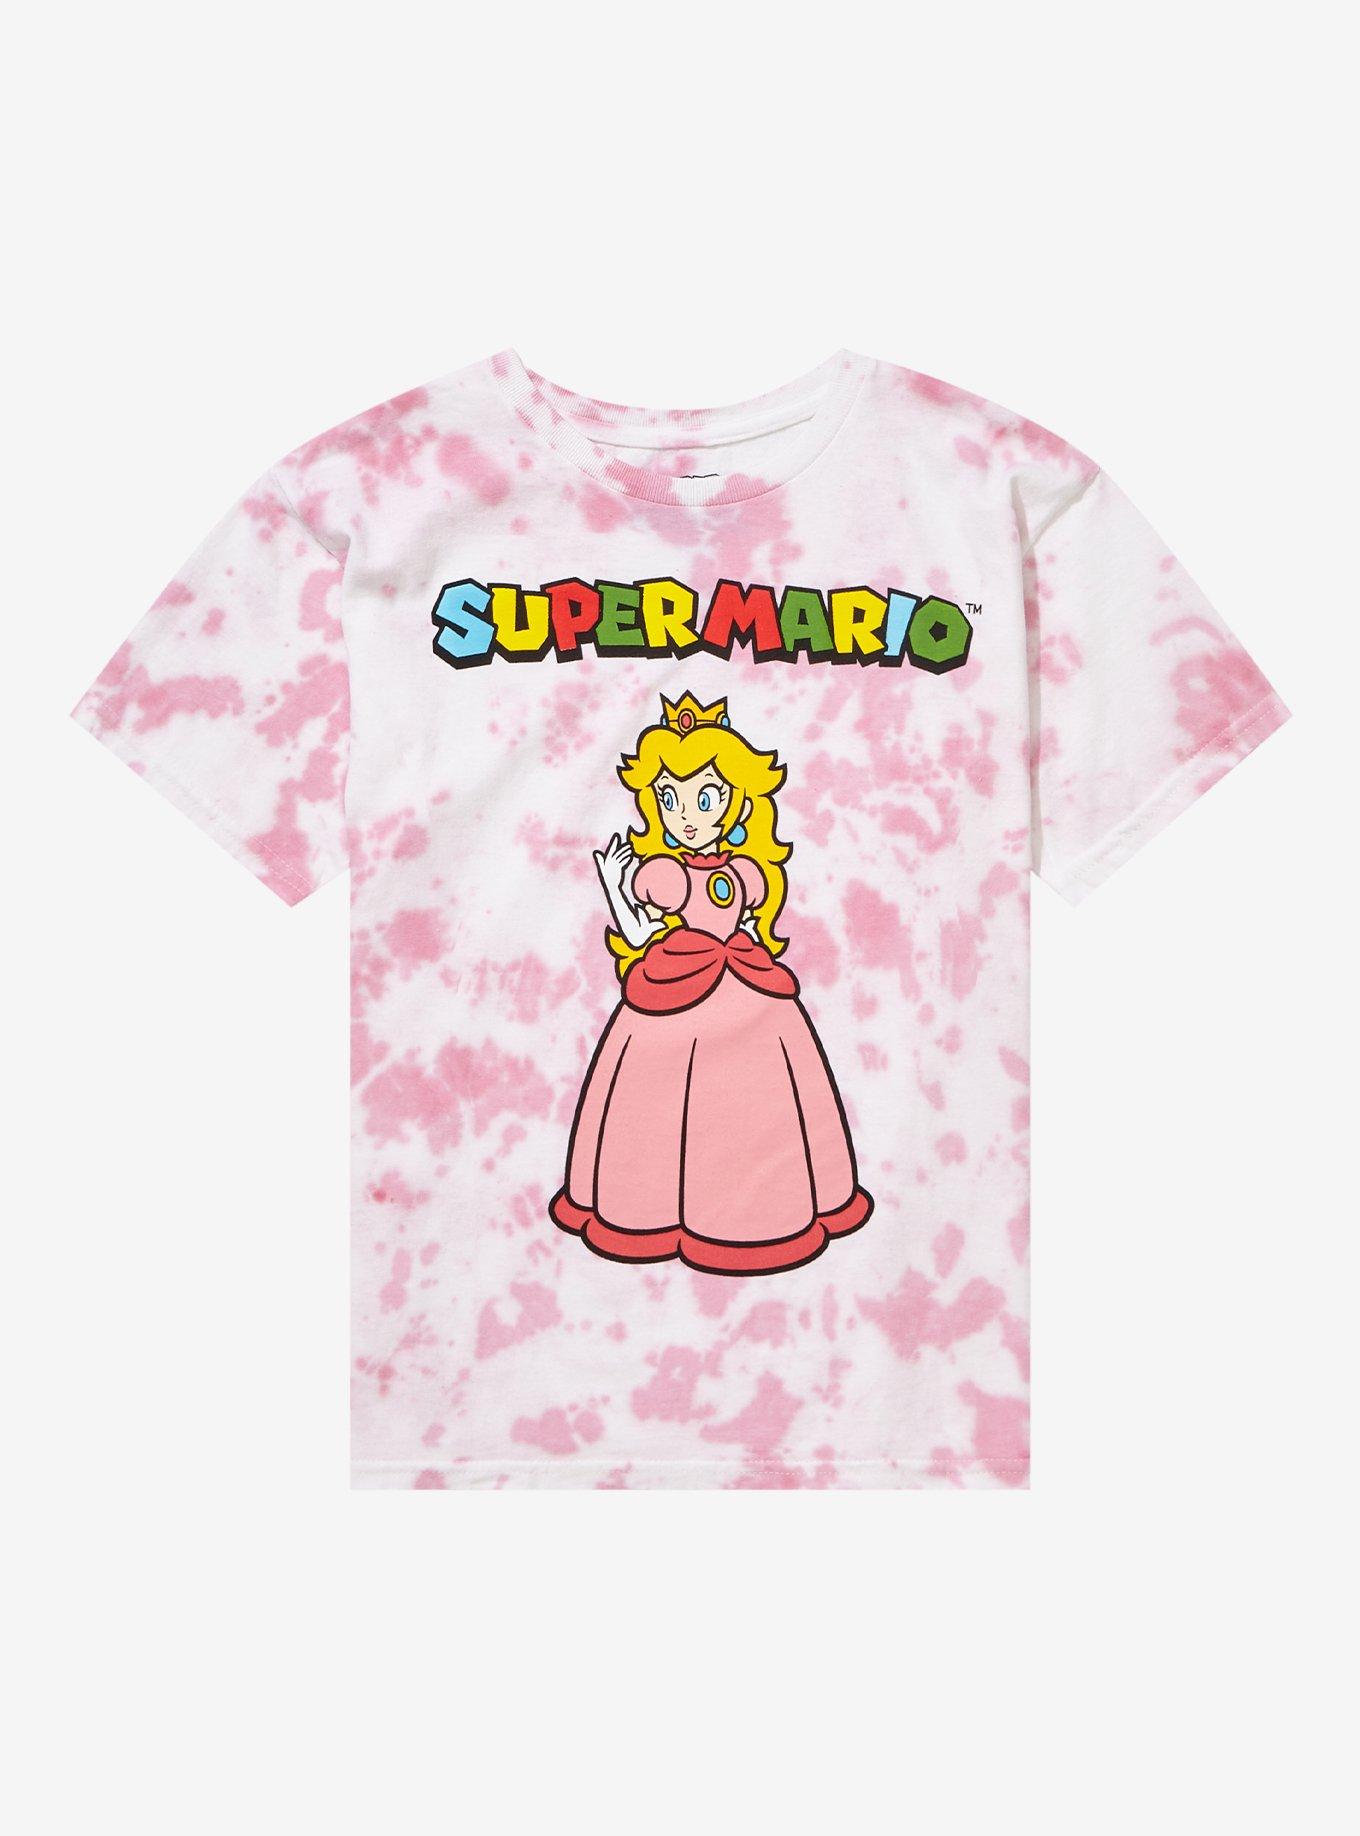 Princess peach Uniqlo Tshirt , Super soft and cute